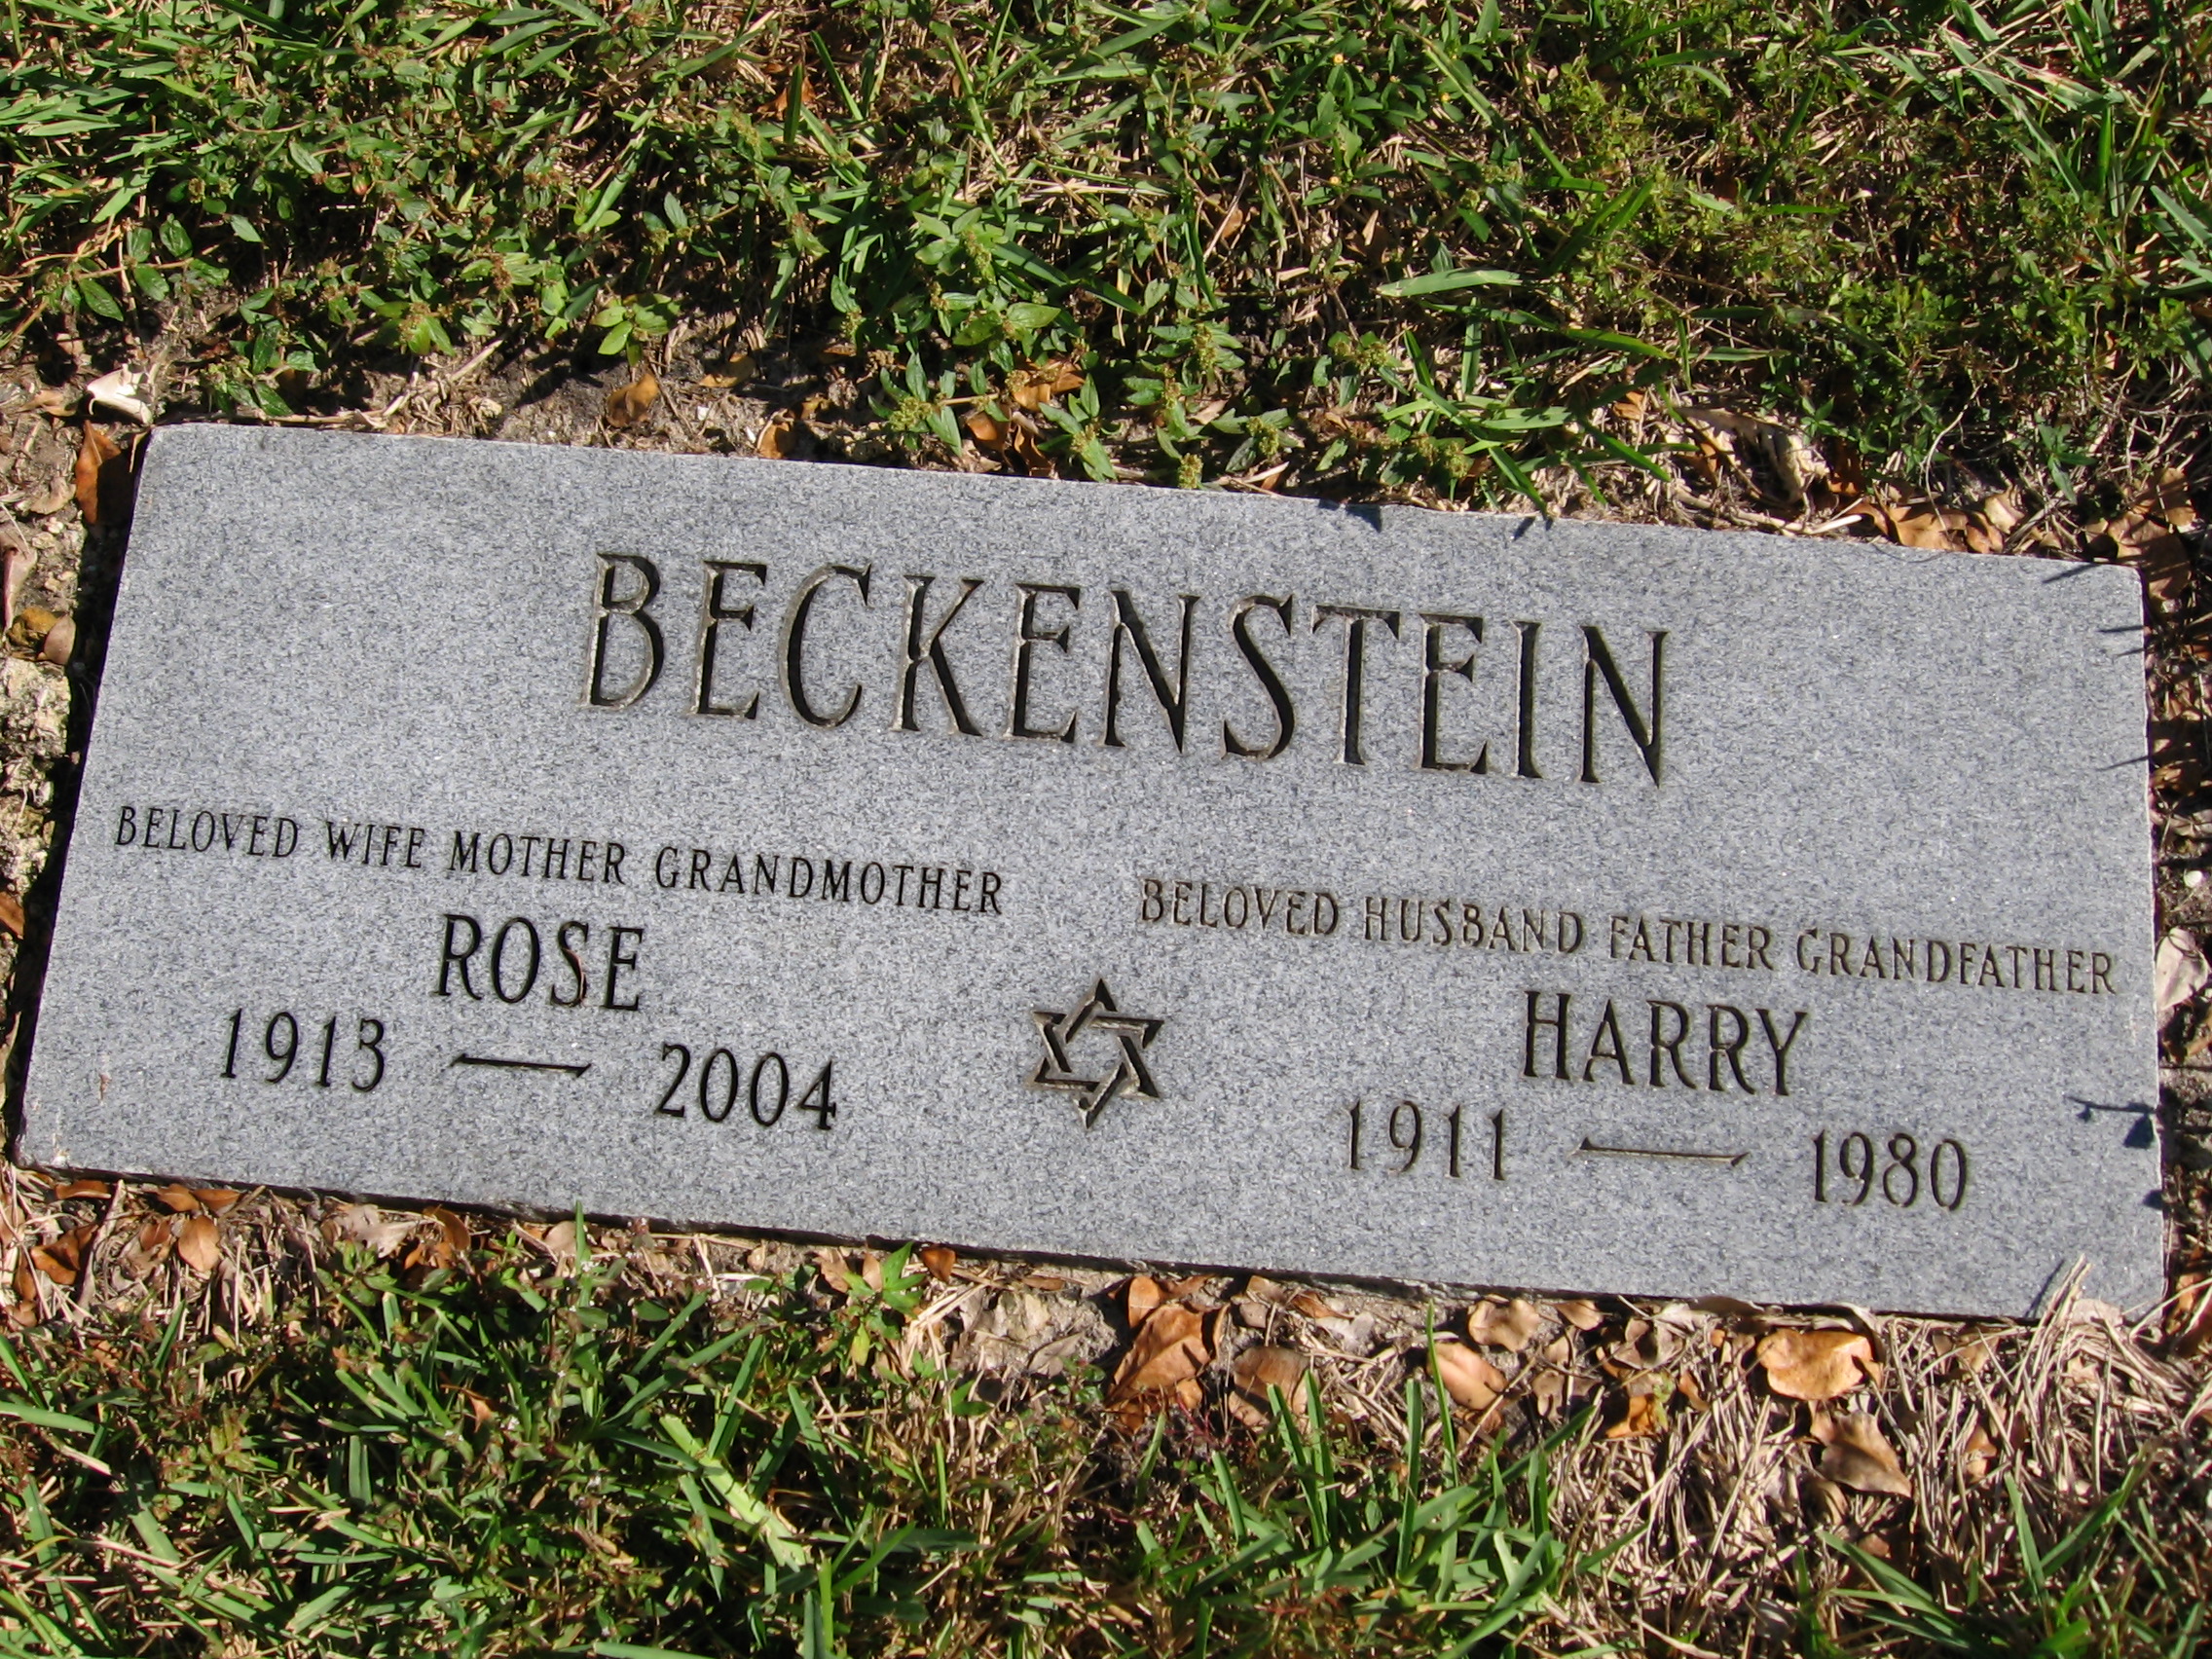 Harry Beckenstein